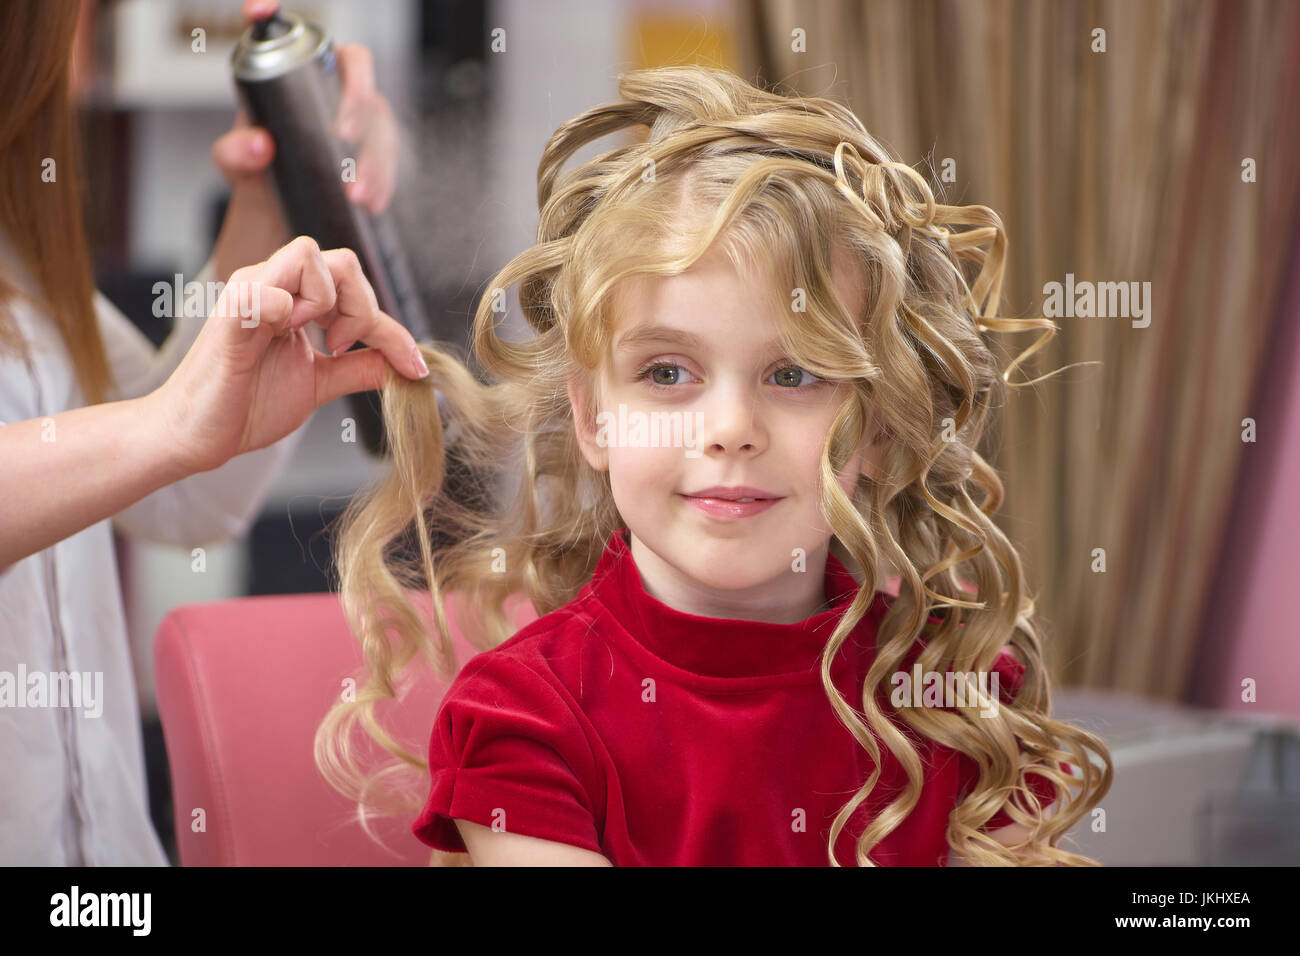 Kleines Mädchen mit dem lockigen Haar. Stockfoto